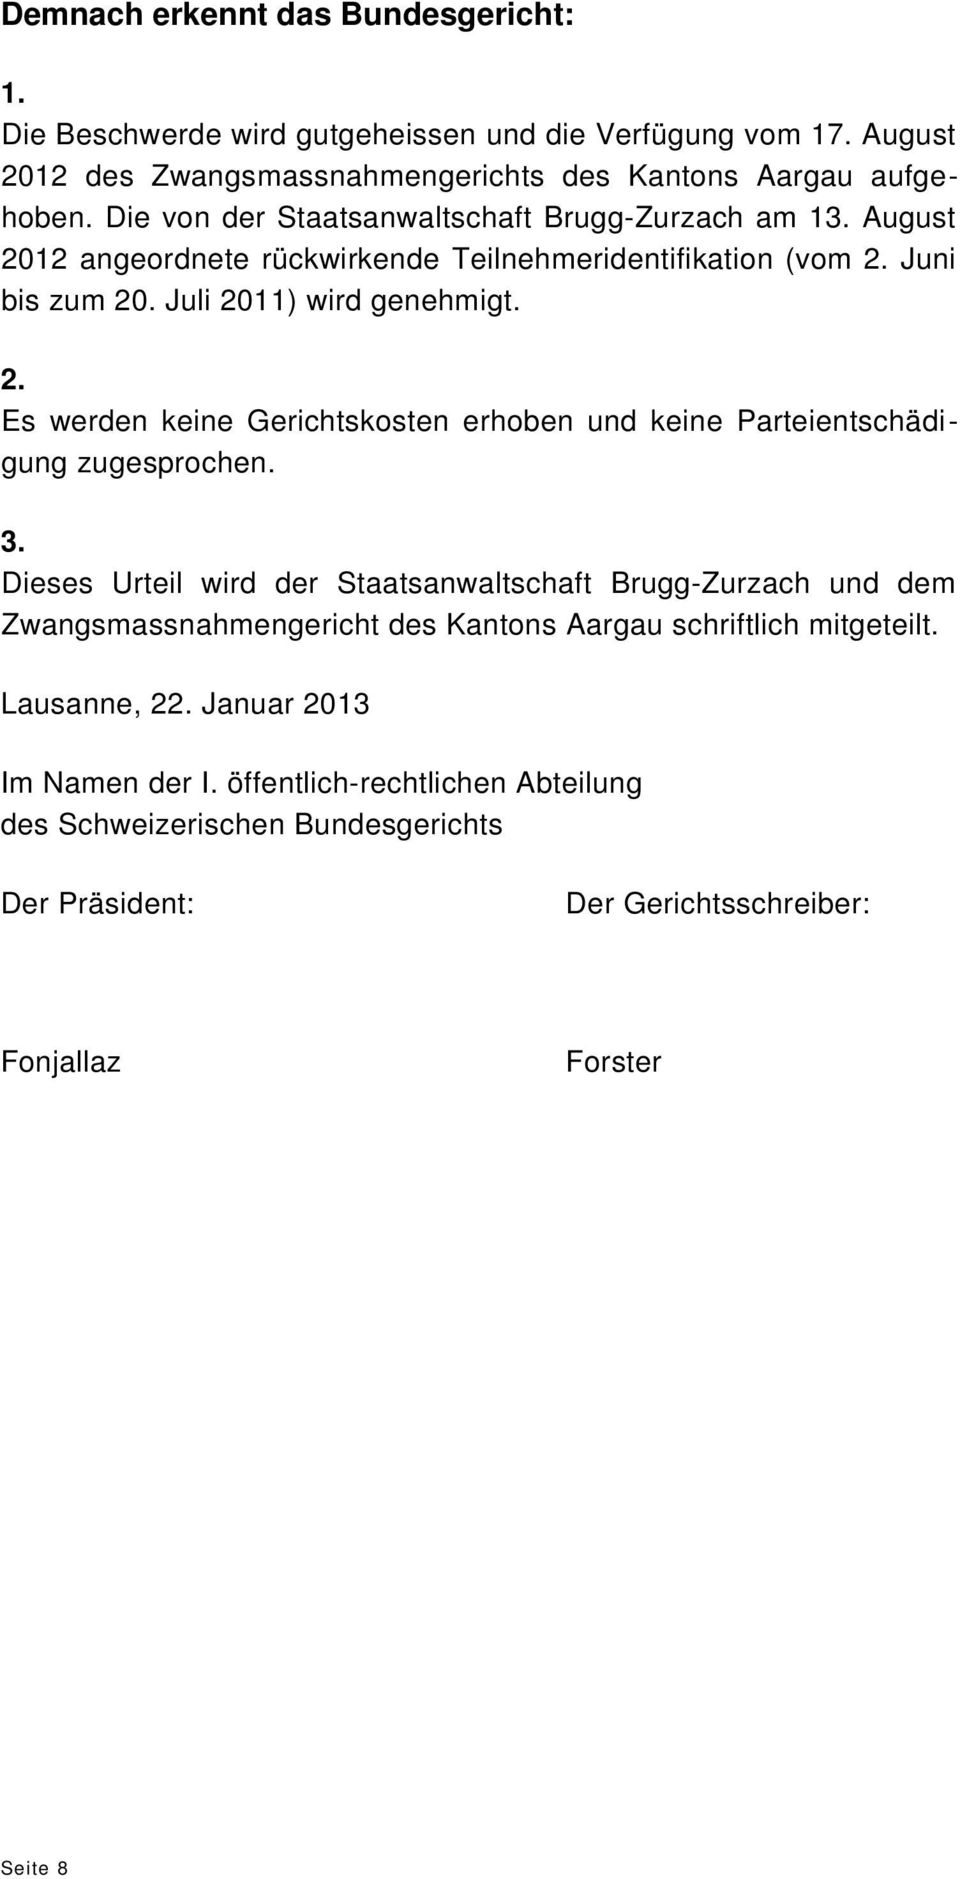 3. Dieses Urteil wird der Staatsanwaltschaft Brugg-Zurzach und dem Zwangsmassnahmengericht des Kantons Aargau schriftlich mitgeteilt. Lausanne, 22. Januar 2013 Im Namen der I.